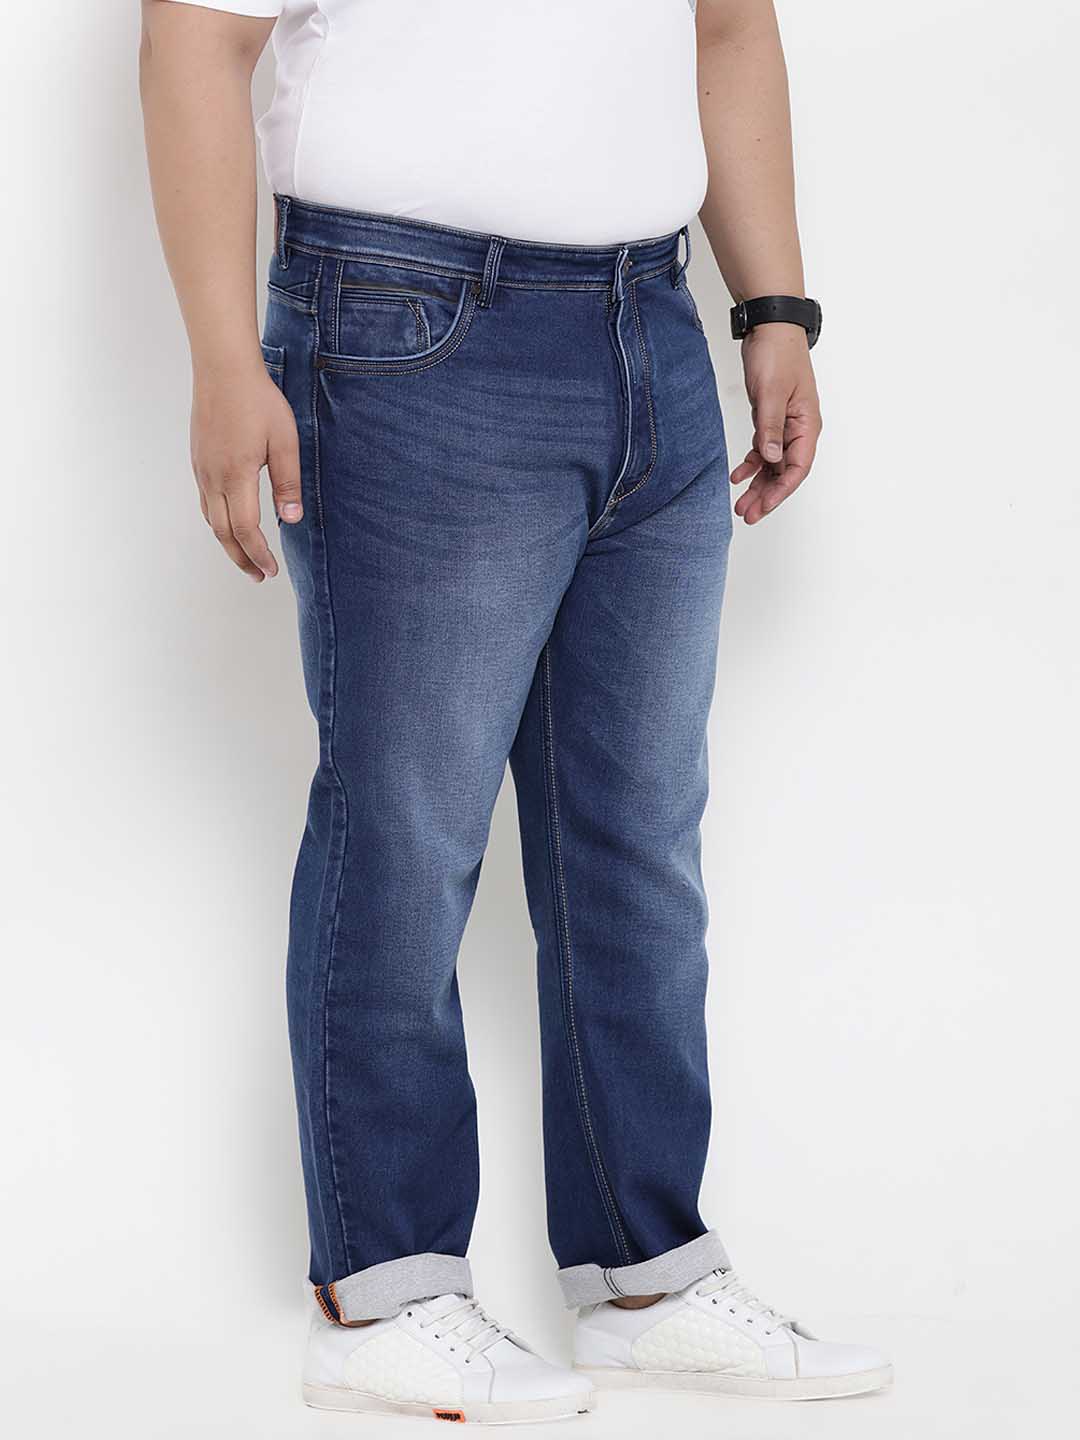 bottomwear/jeans/BEPLJPJ1188/bepljpj1188-4.jpg